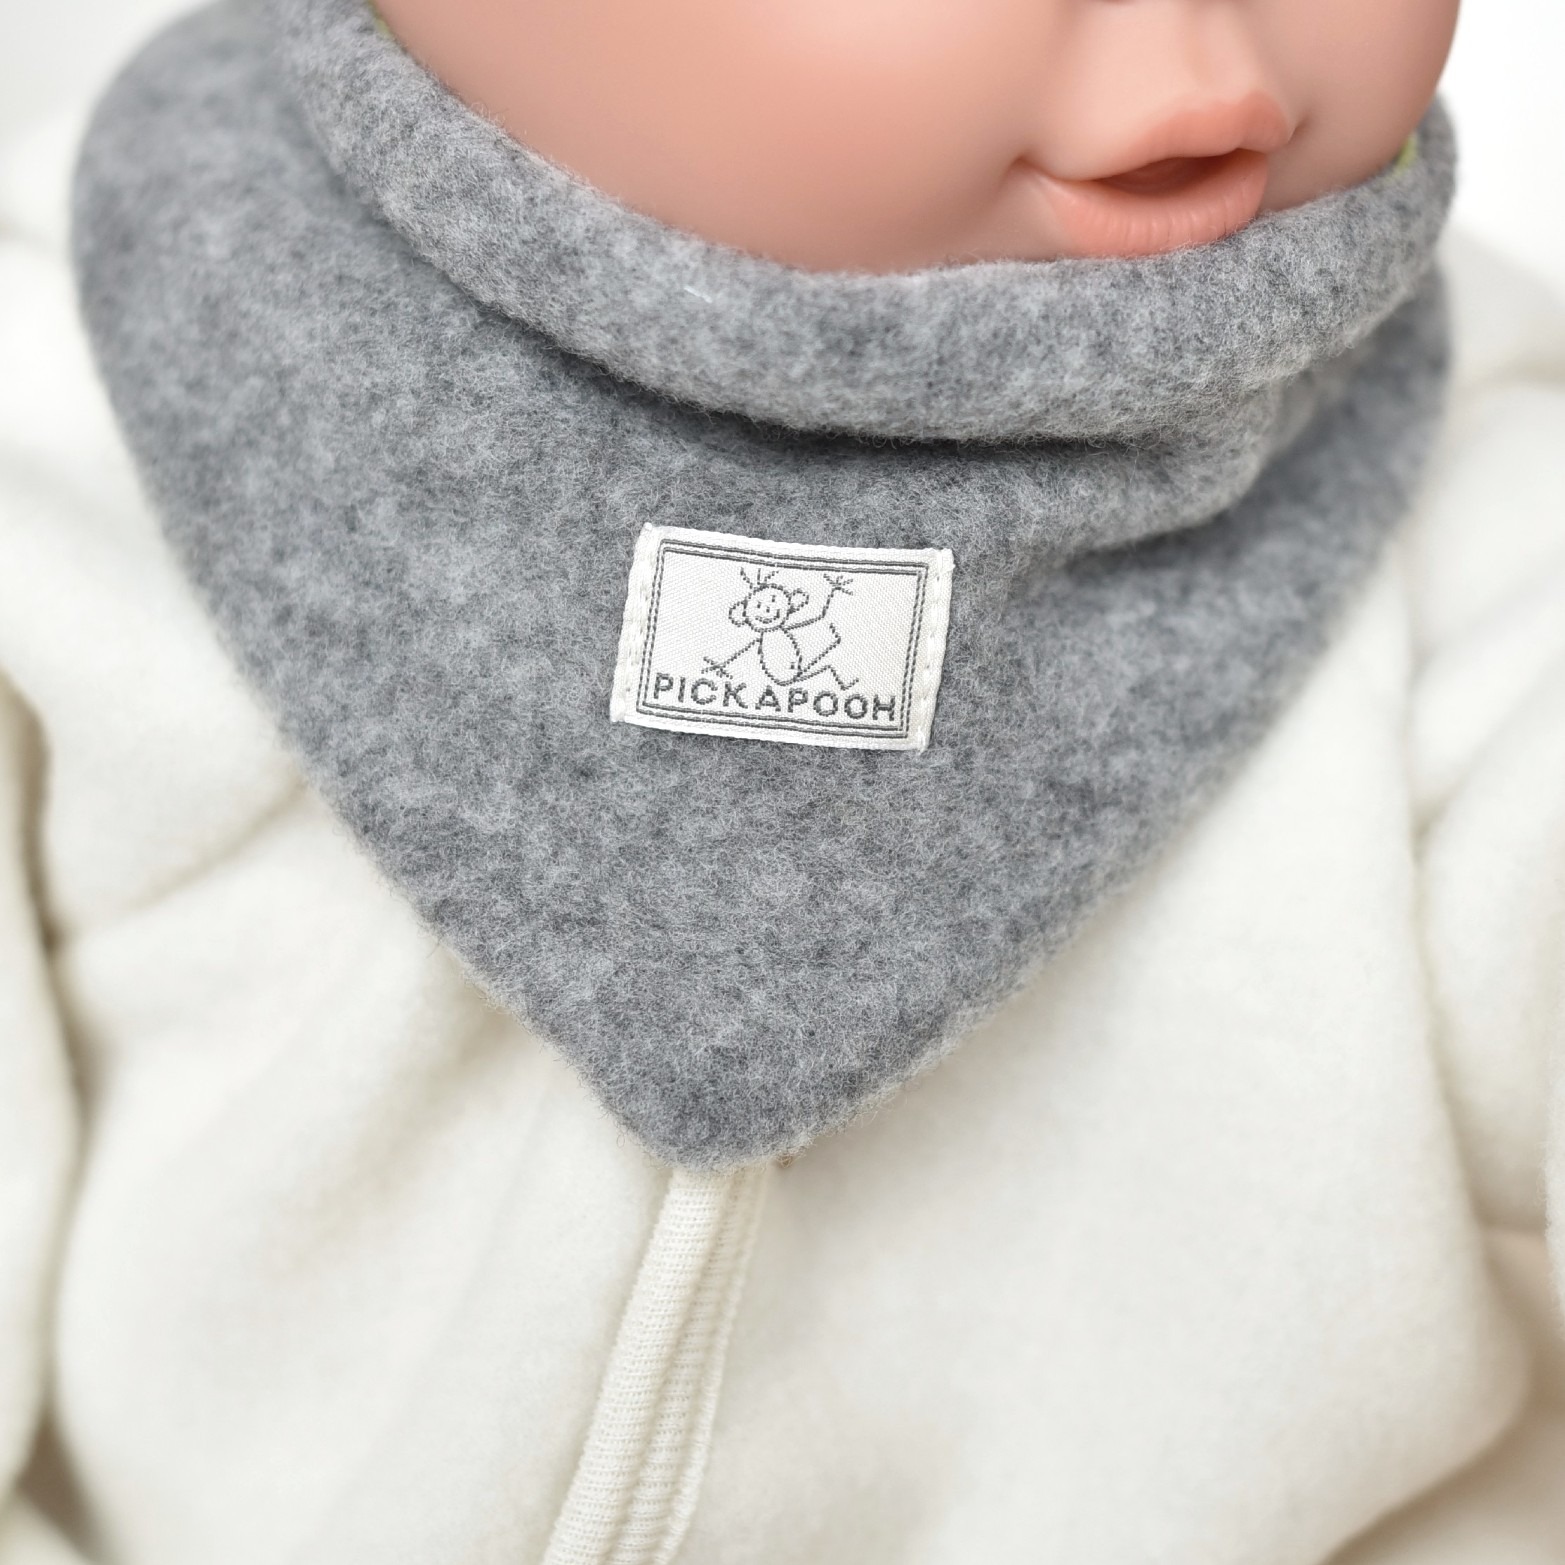 Tour de cou bébé enfant en laine polaire de laine mérinos bio gris Pickapooh